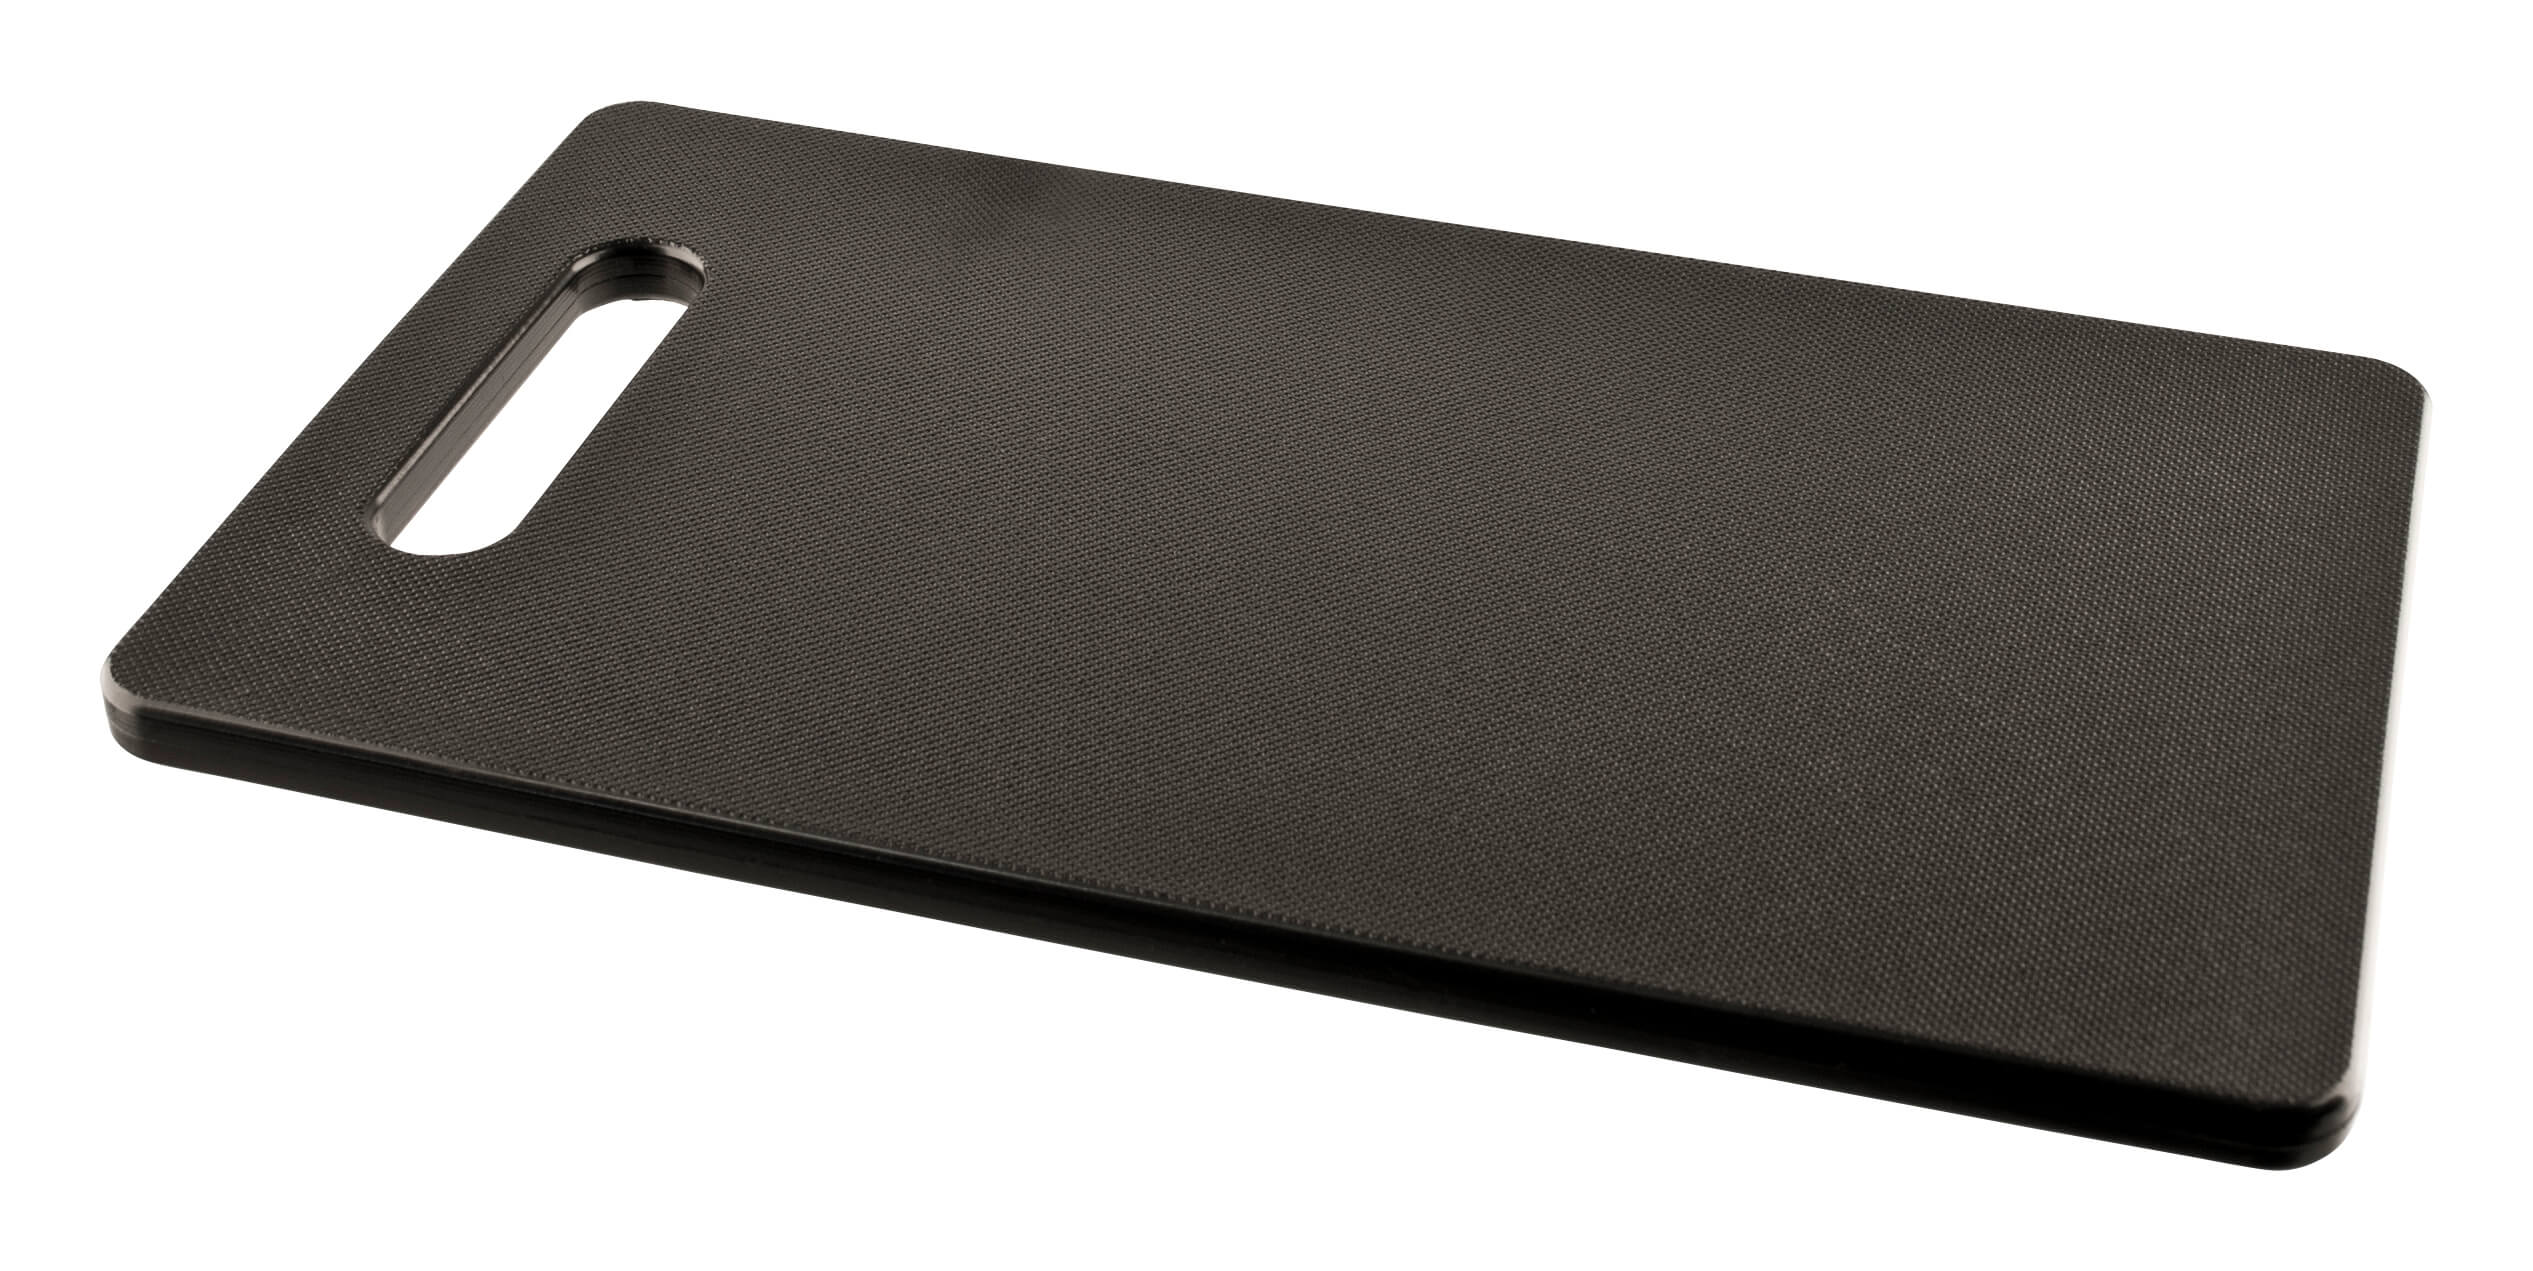 Cutting board with handle, polyethylene black - 25x15x1cm